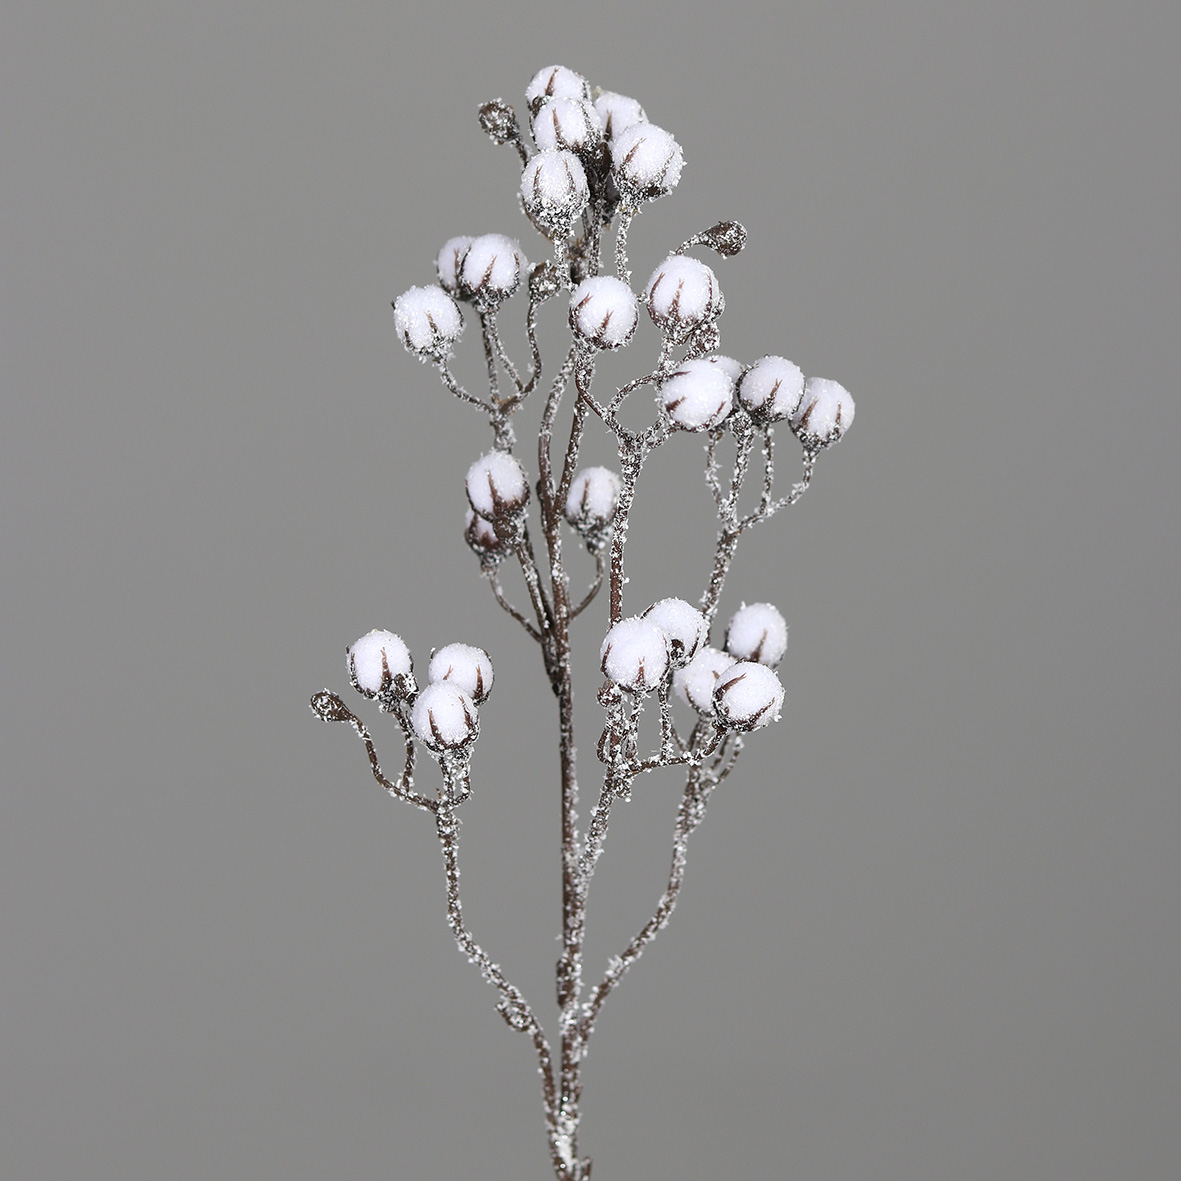 Baumwollzweig geeist 46cm DP Kunstpflanzen künstliche Blumen Pflanzen Baumwolle